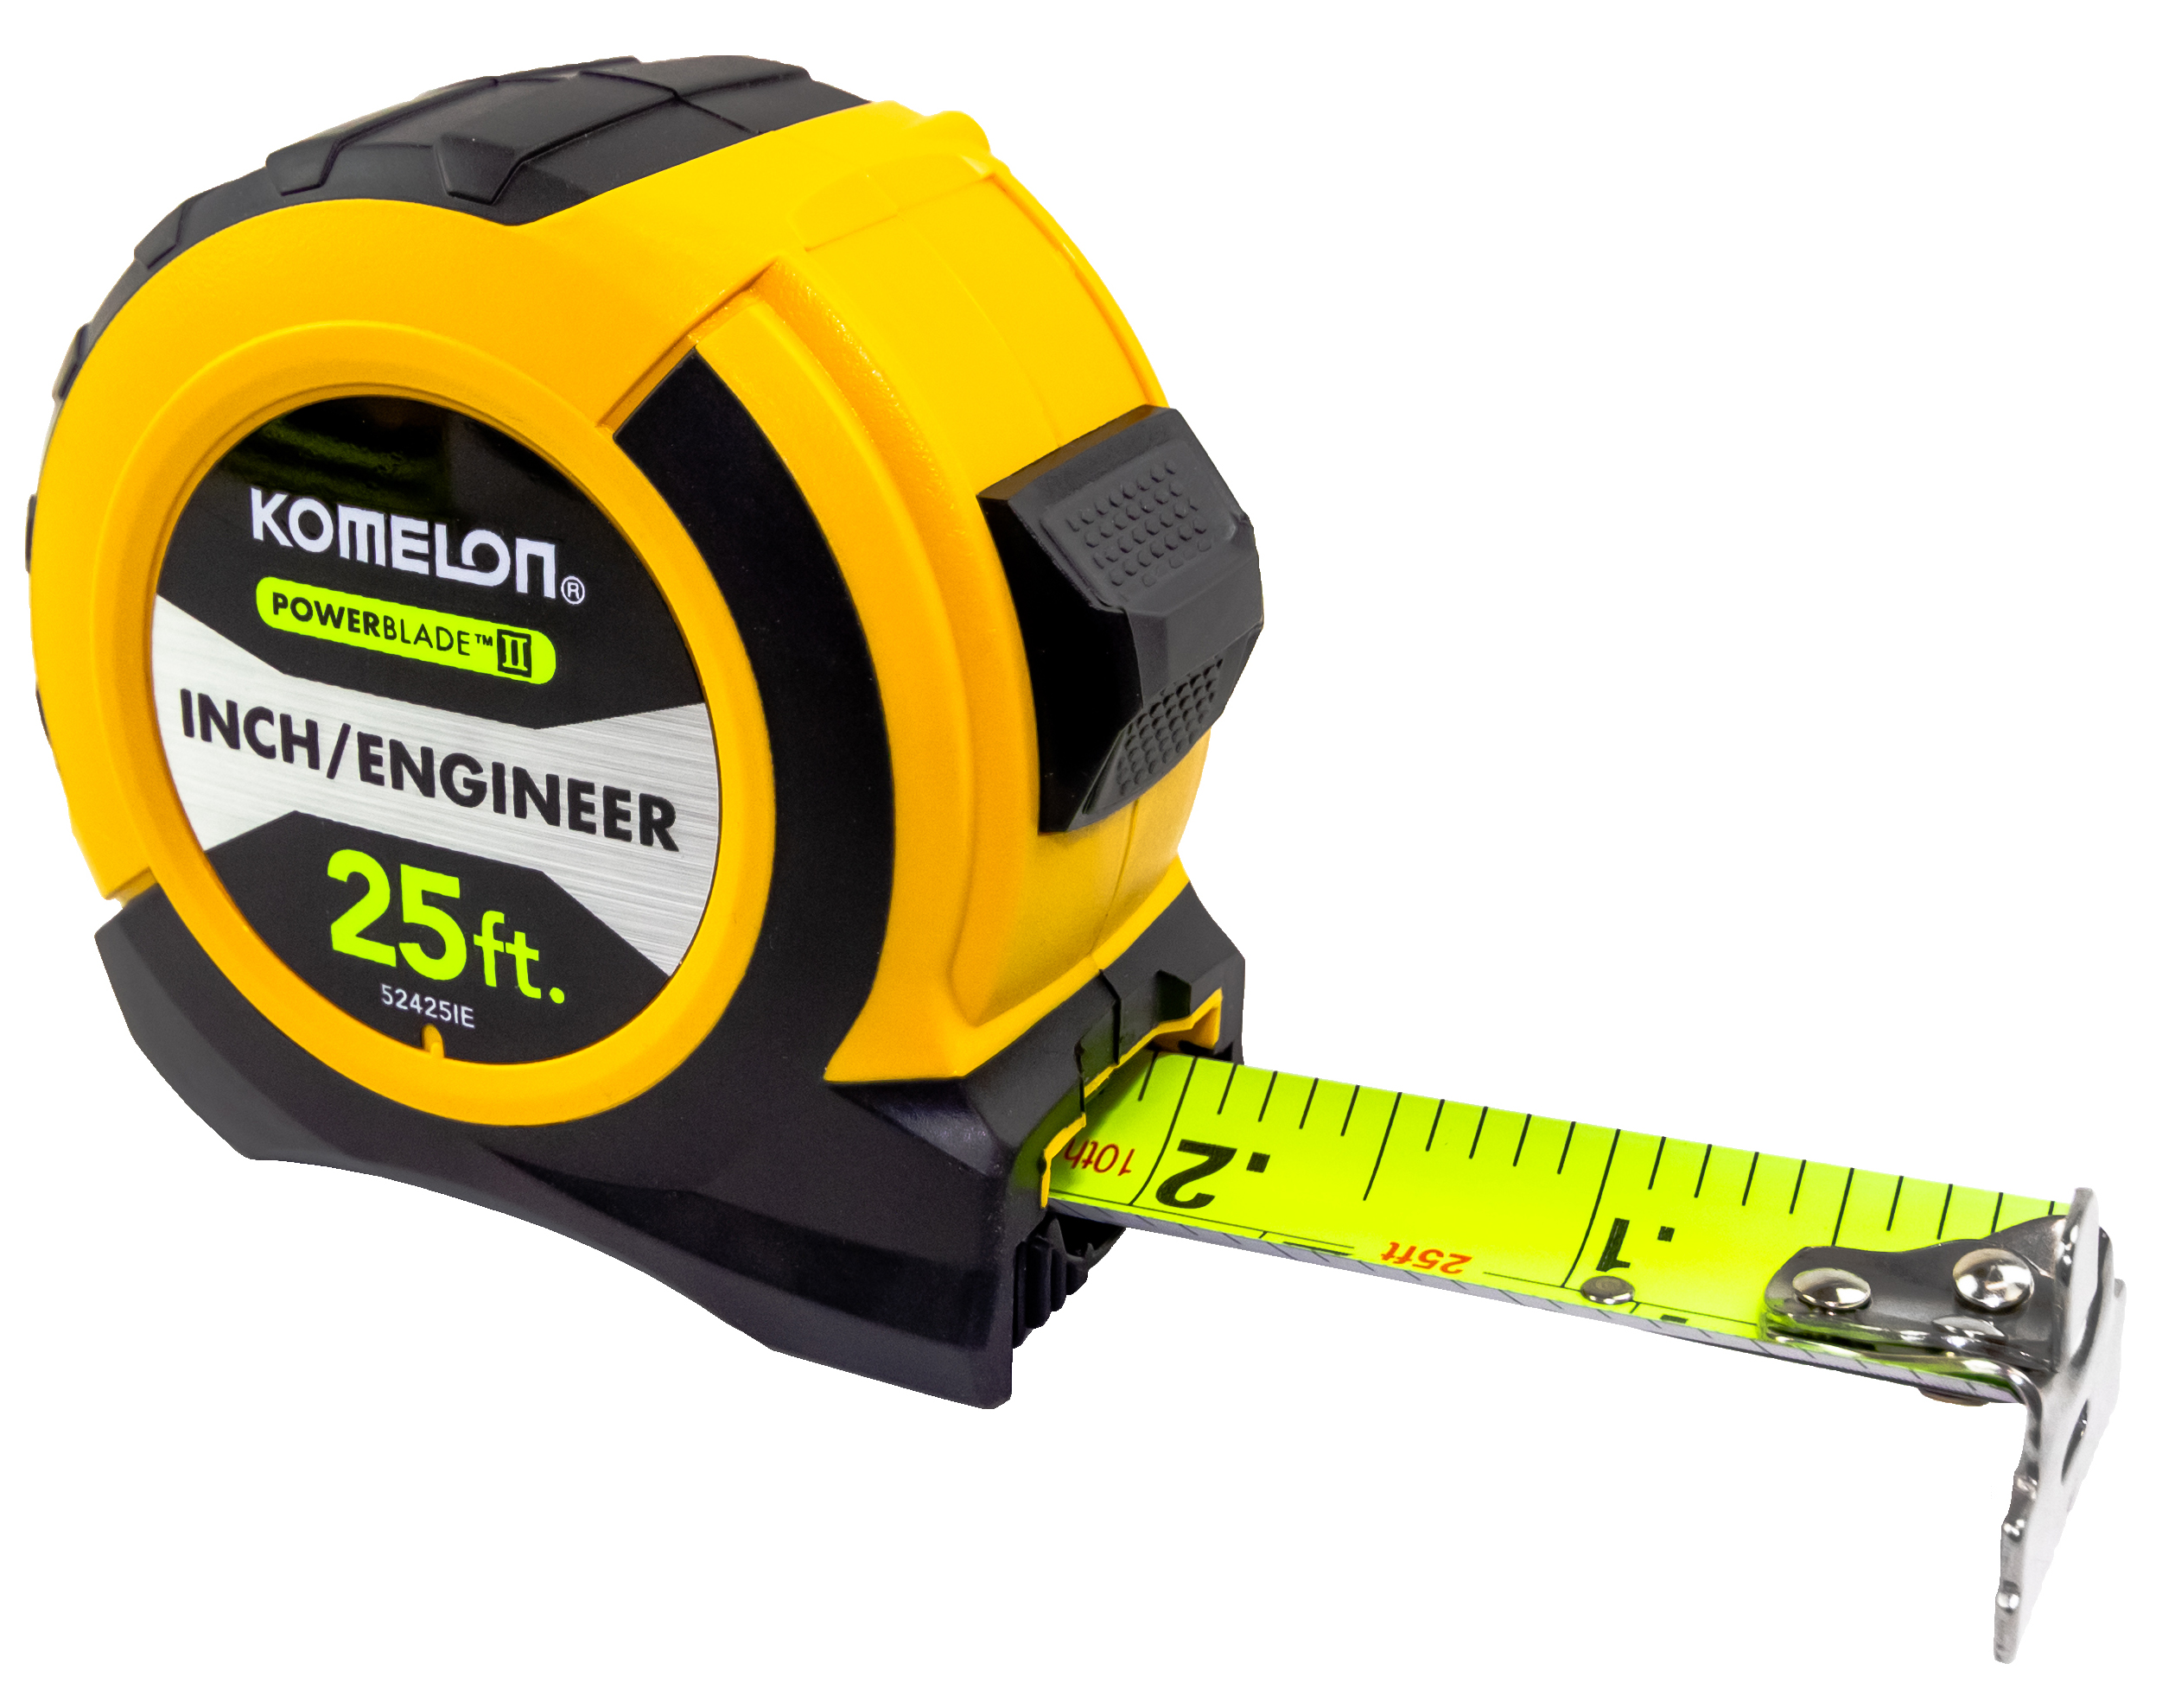 10 Pcs Komelon KMC-14C Keymaster 2m Diameter Tape Measure Workshop Tools_mg 